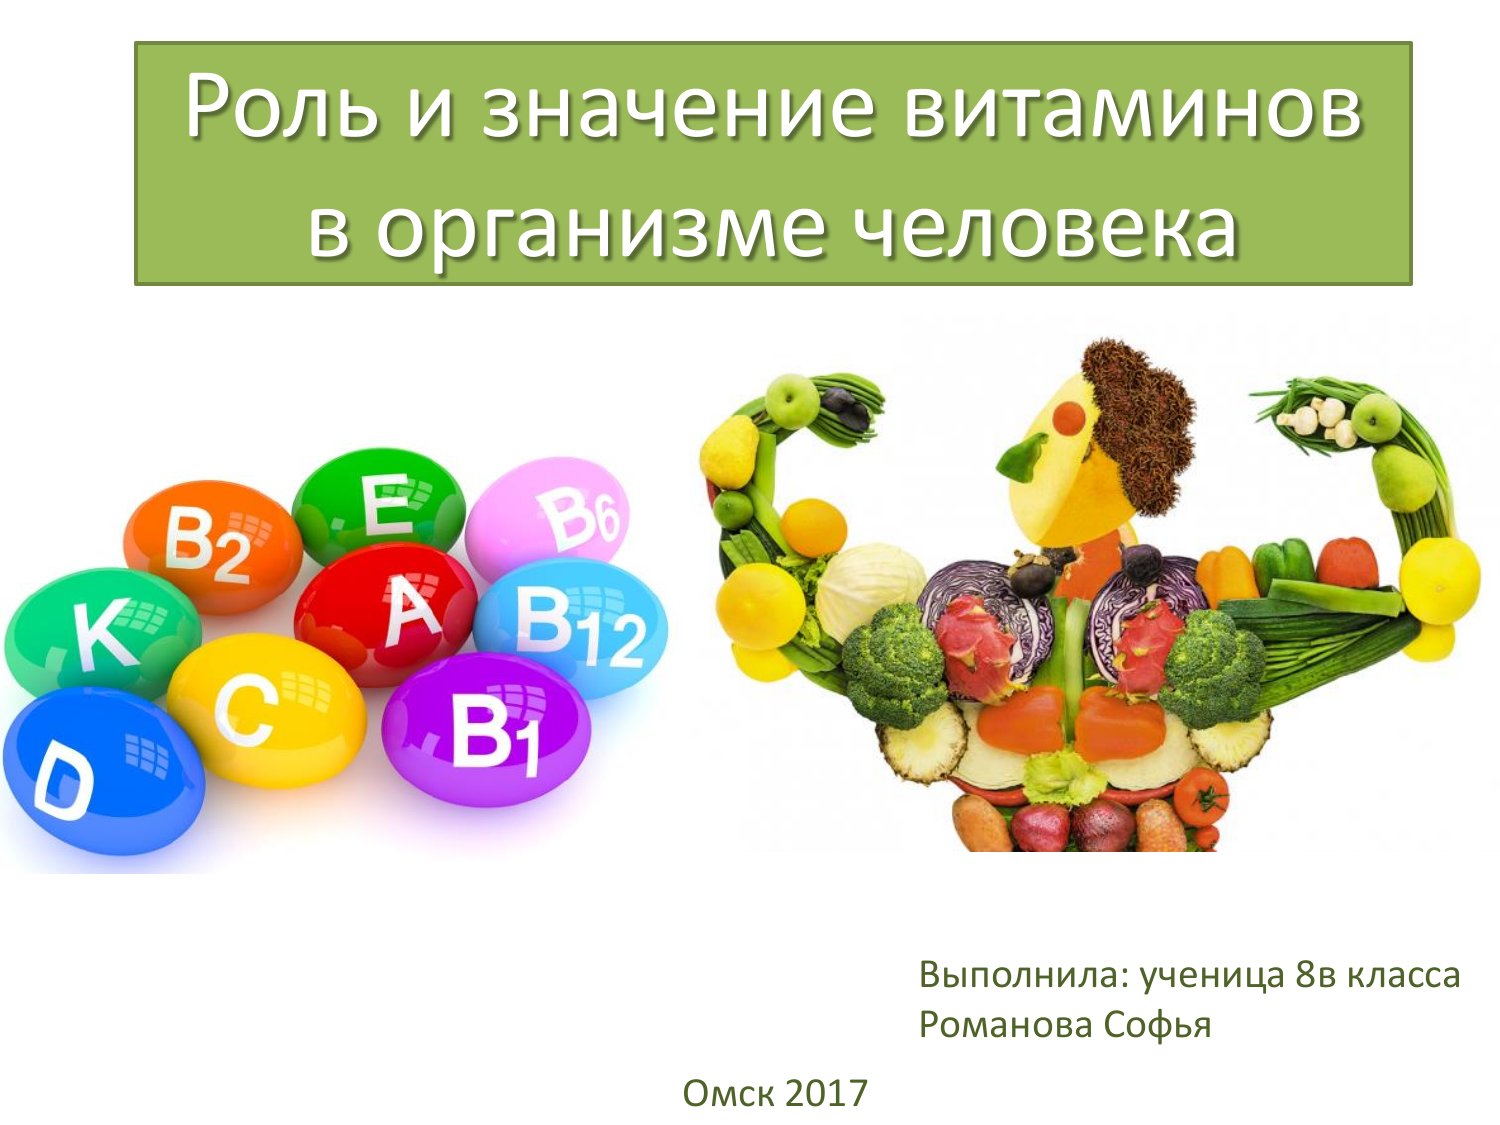 Роль человека в саду. Витамины в организме человека. Важность витаминов. Роль витаминов в организме человека. Витамины. Роль витаминов в организме человека.